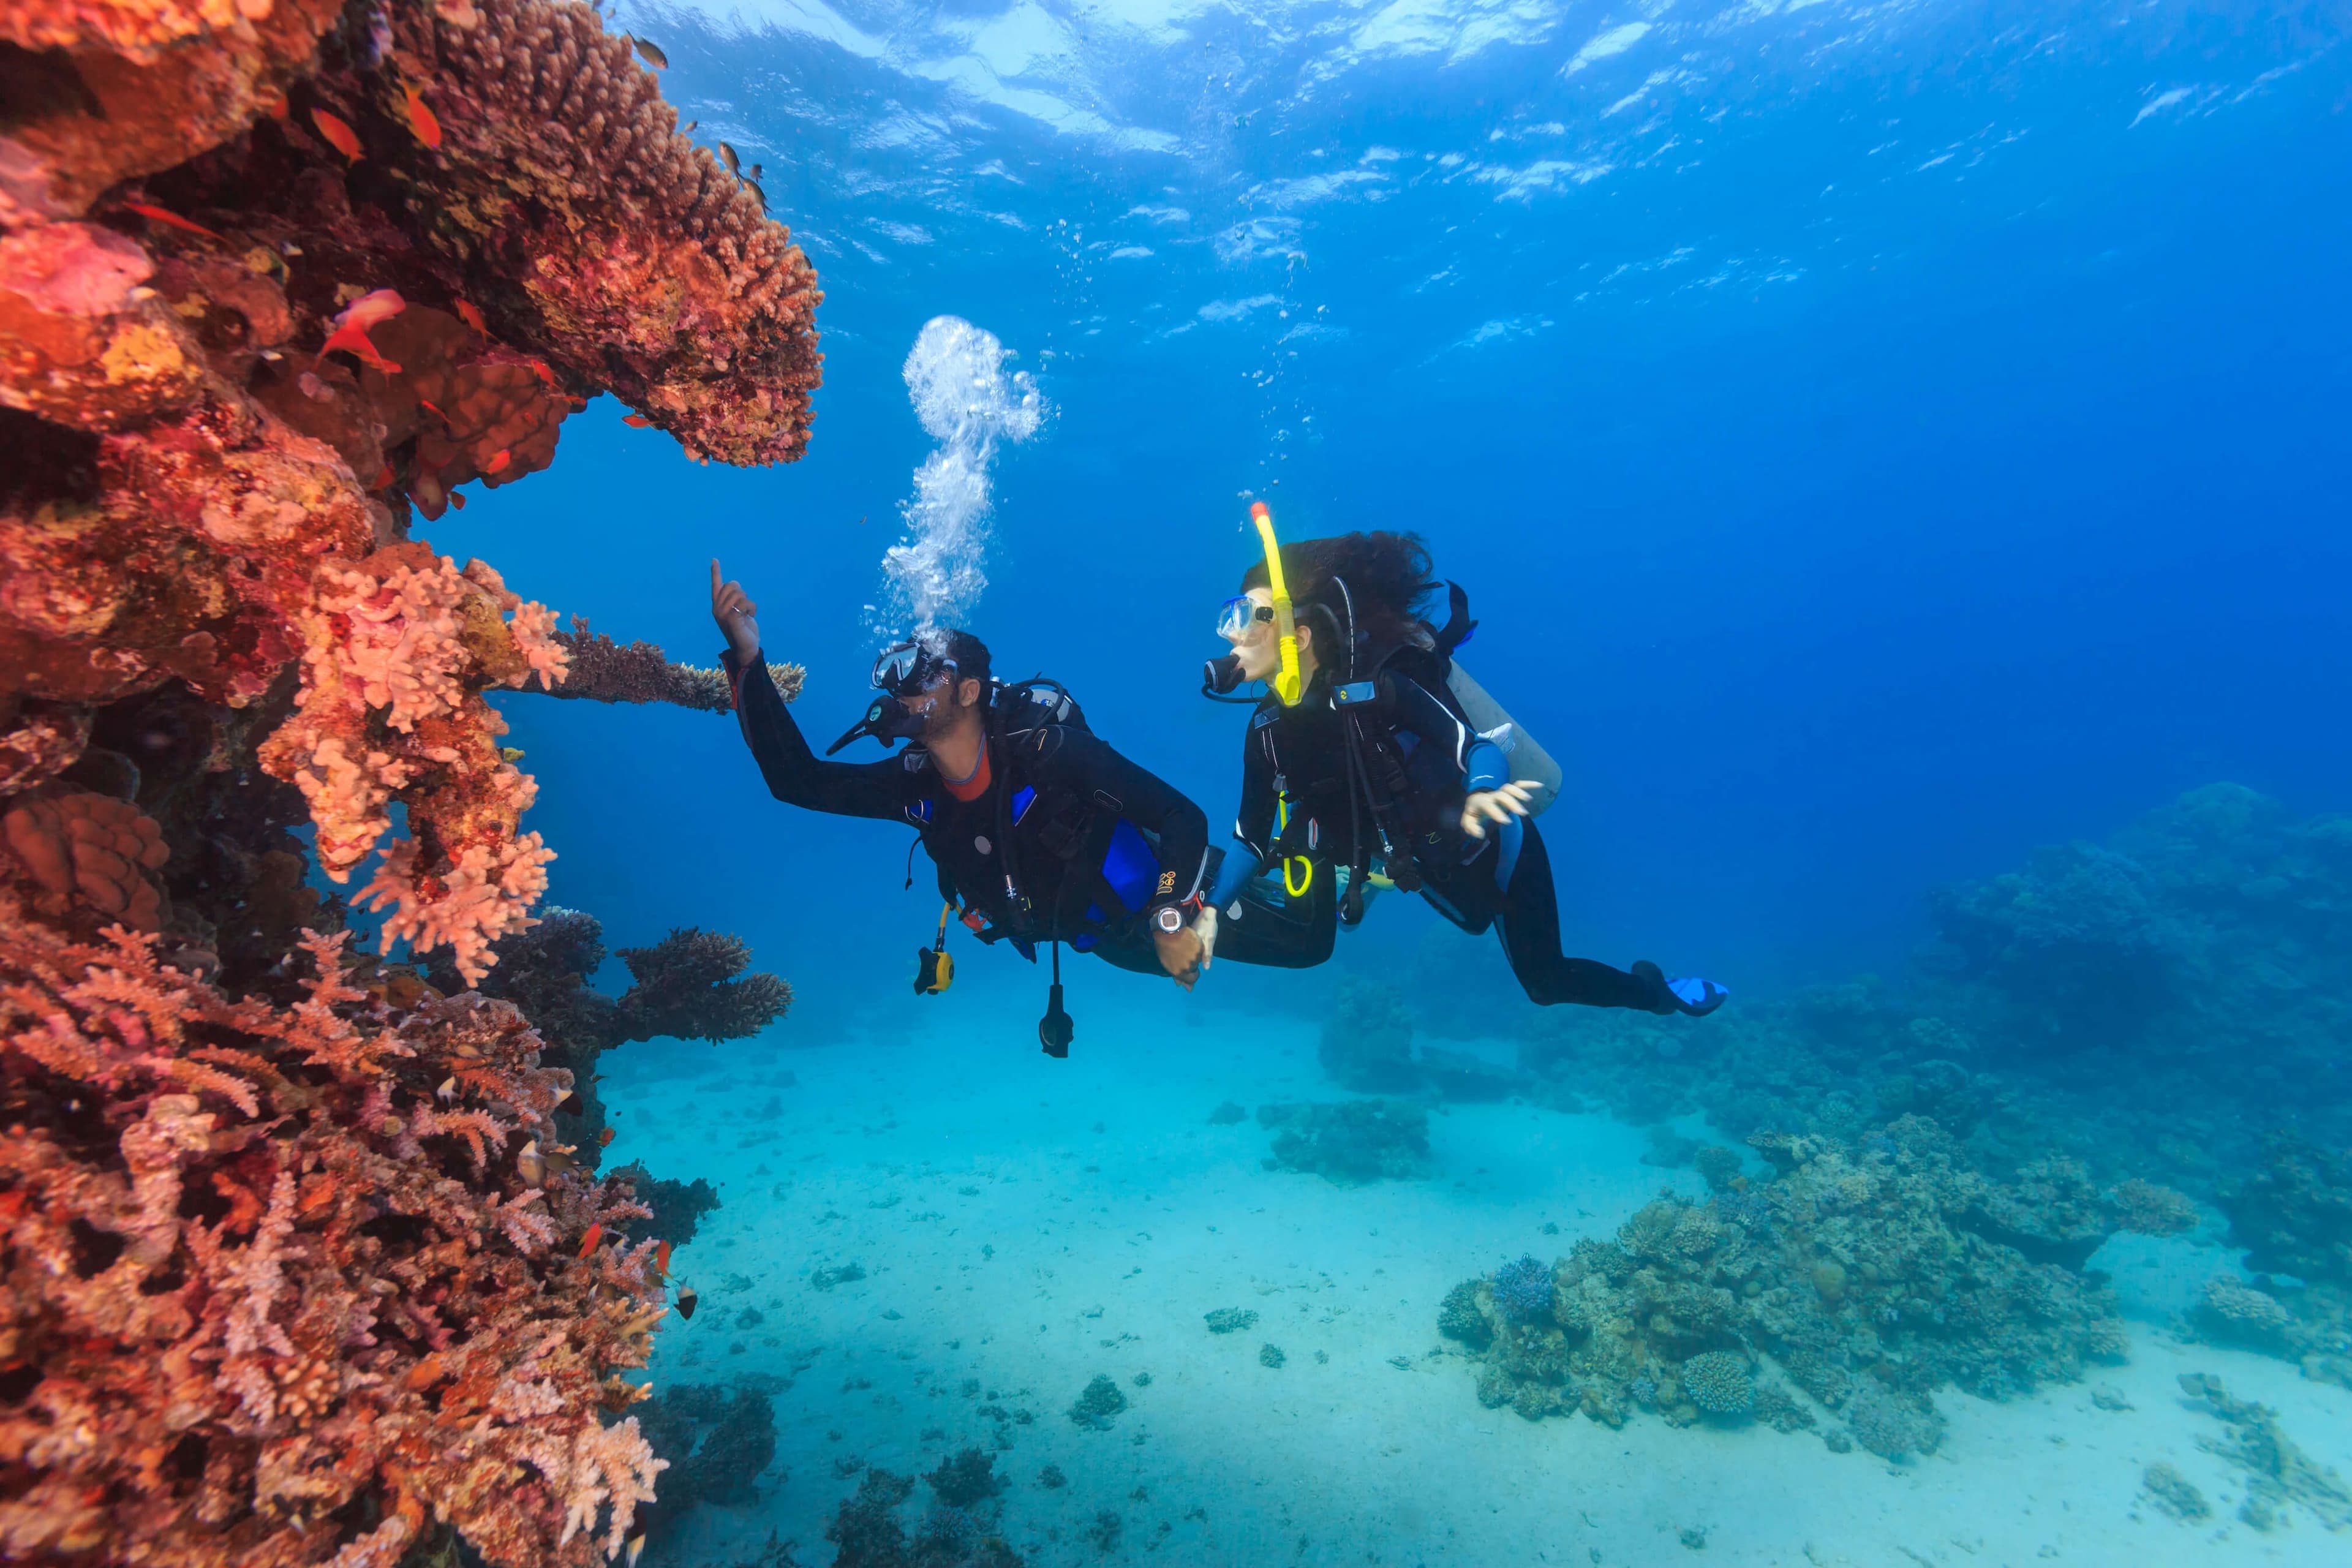 شخصان بالغان يغوصان لأول مرة في الشعاب المرجانية الاستوائية في سري لانكا.